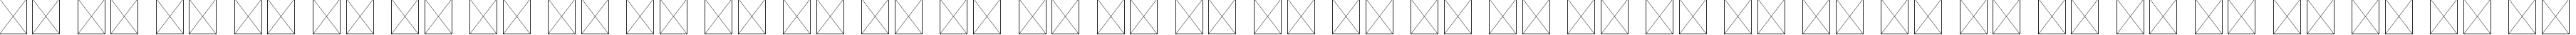 Пример написания русского алфавита шрифтом Xenopyre Regular